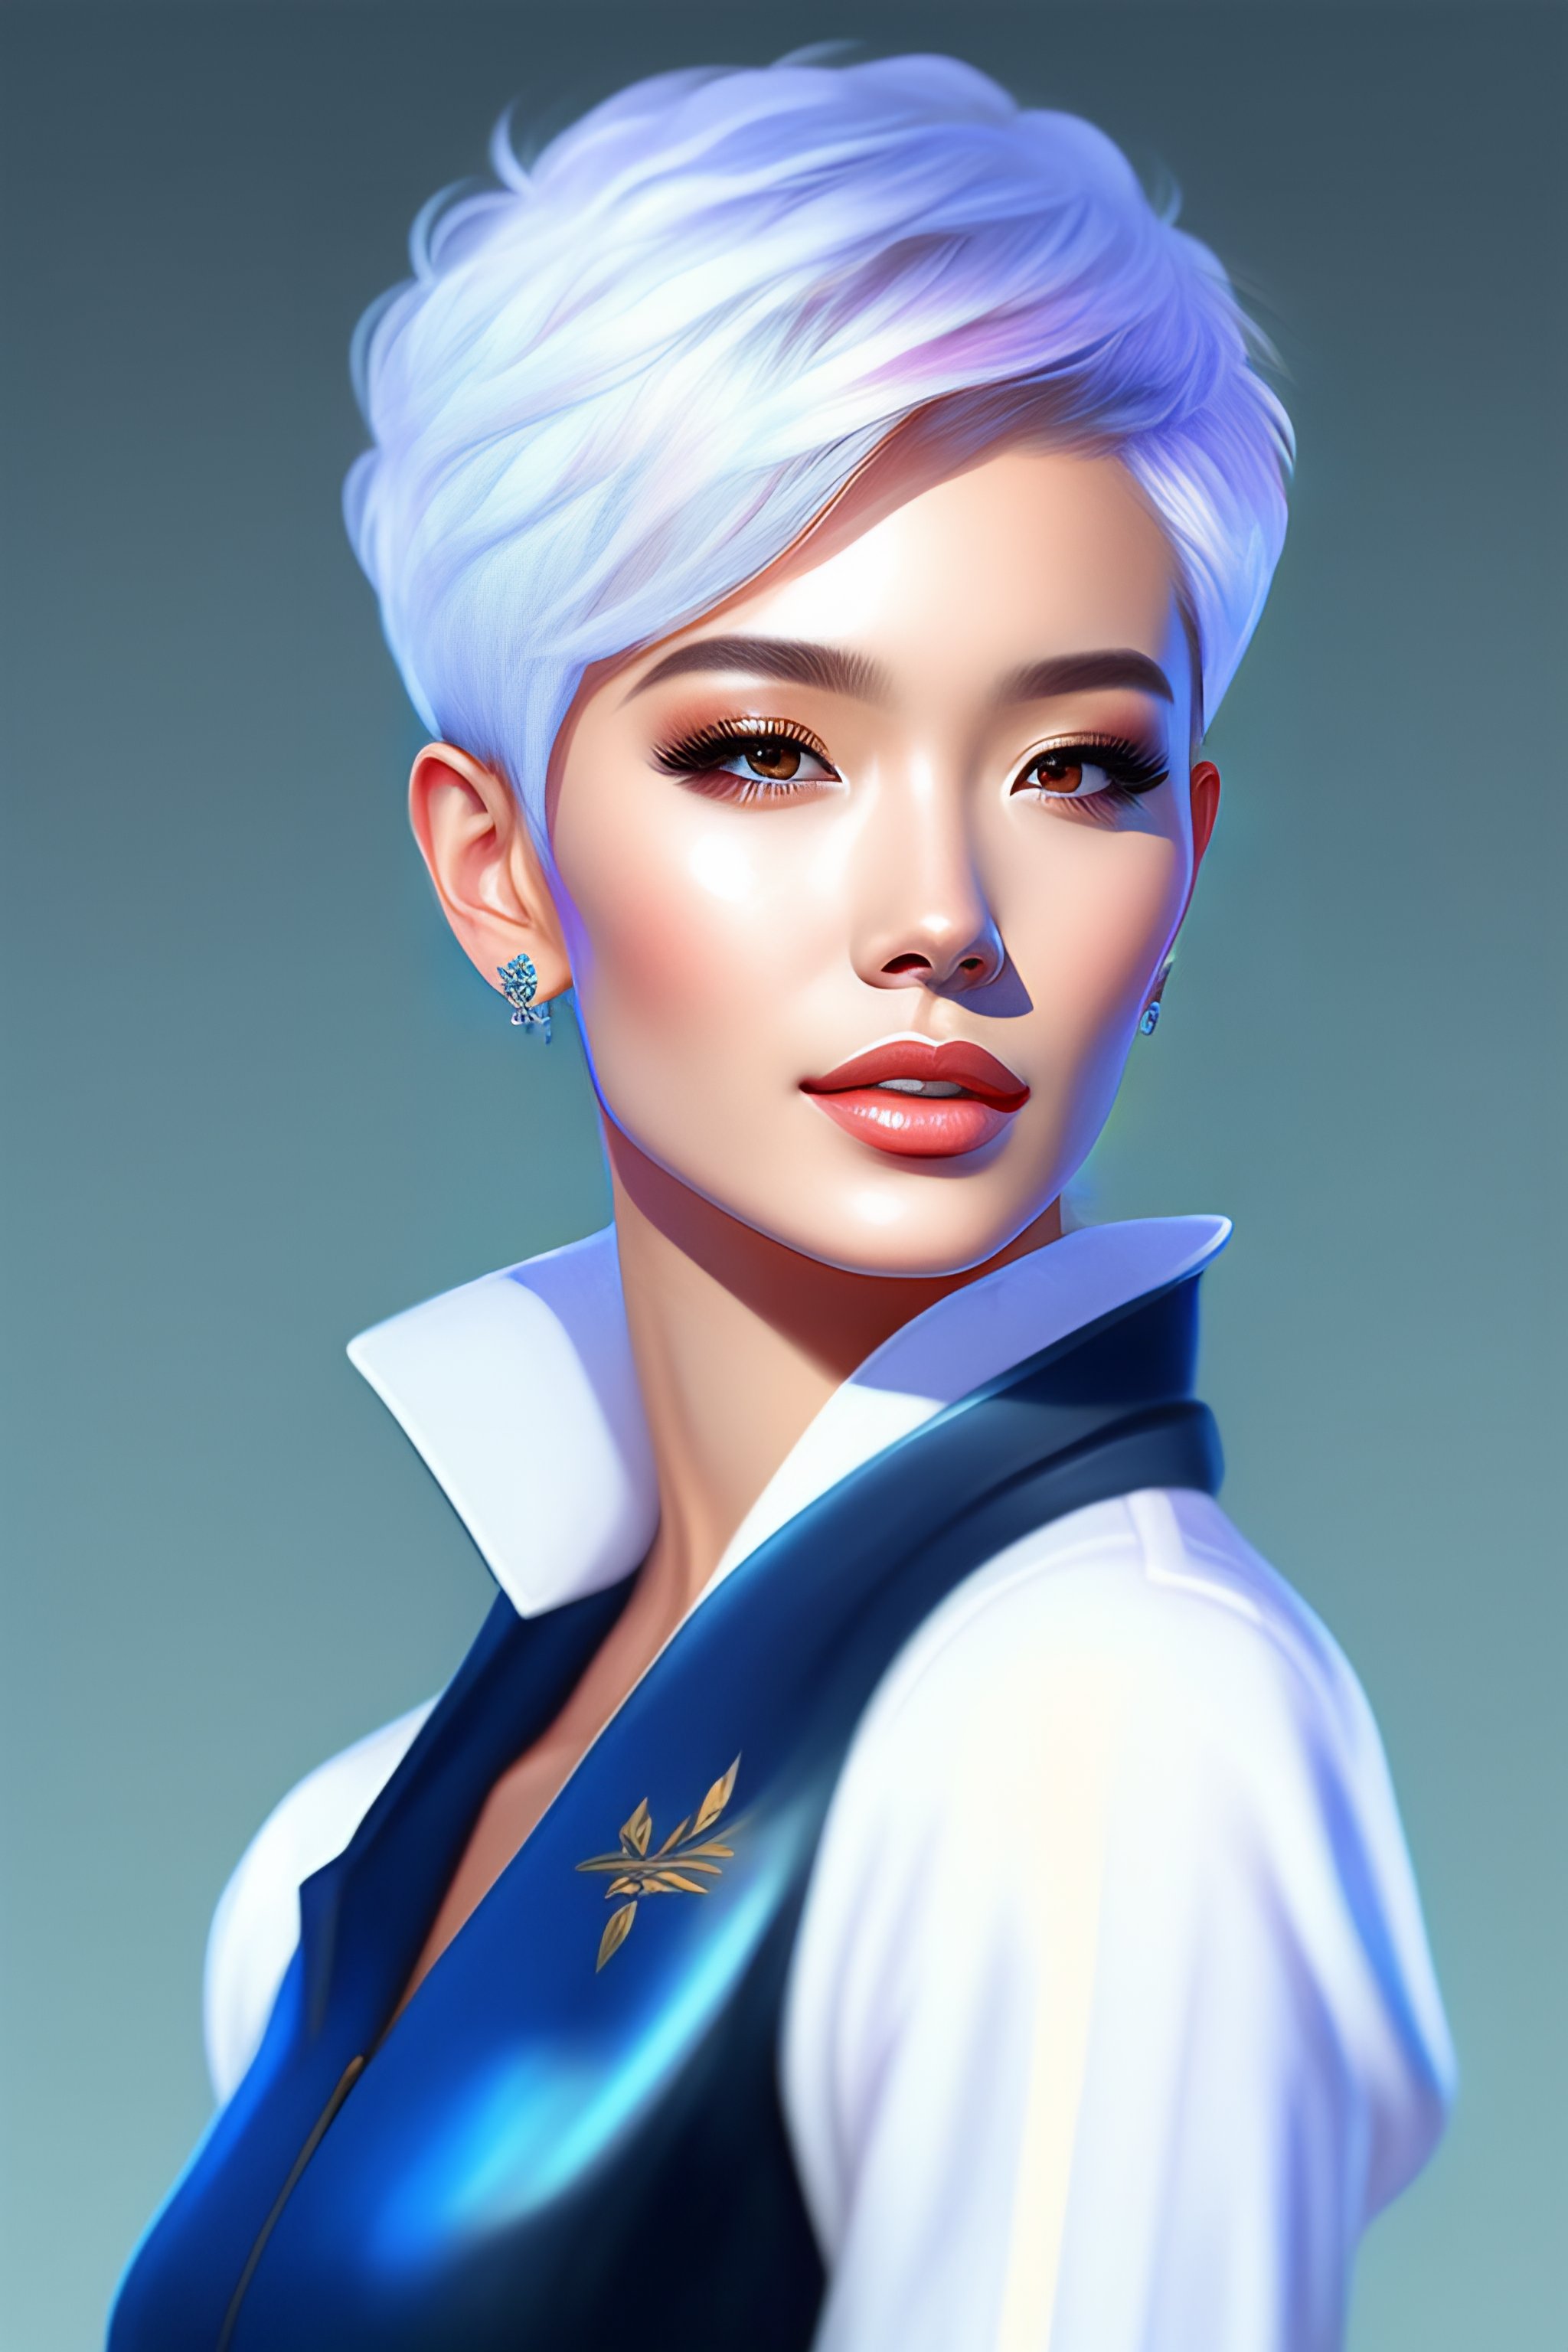 Lexica - White short pixie cut hair woman blue jacket Korean digital ...